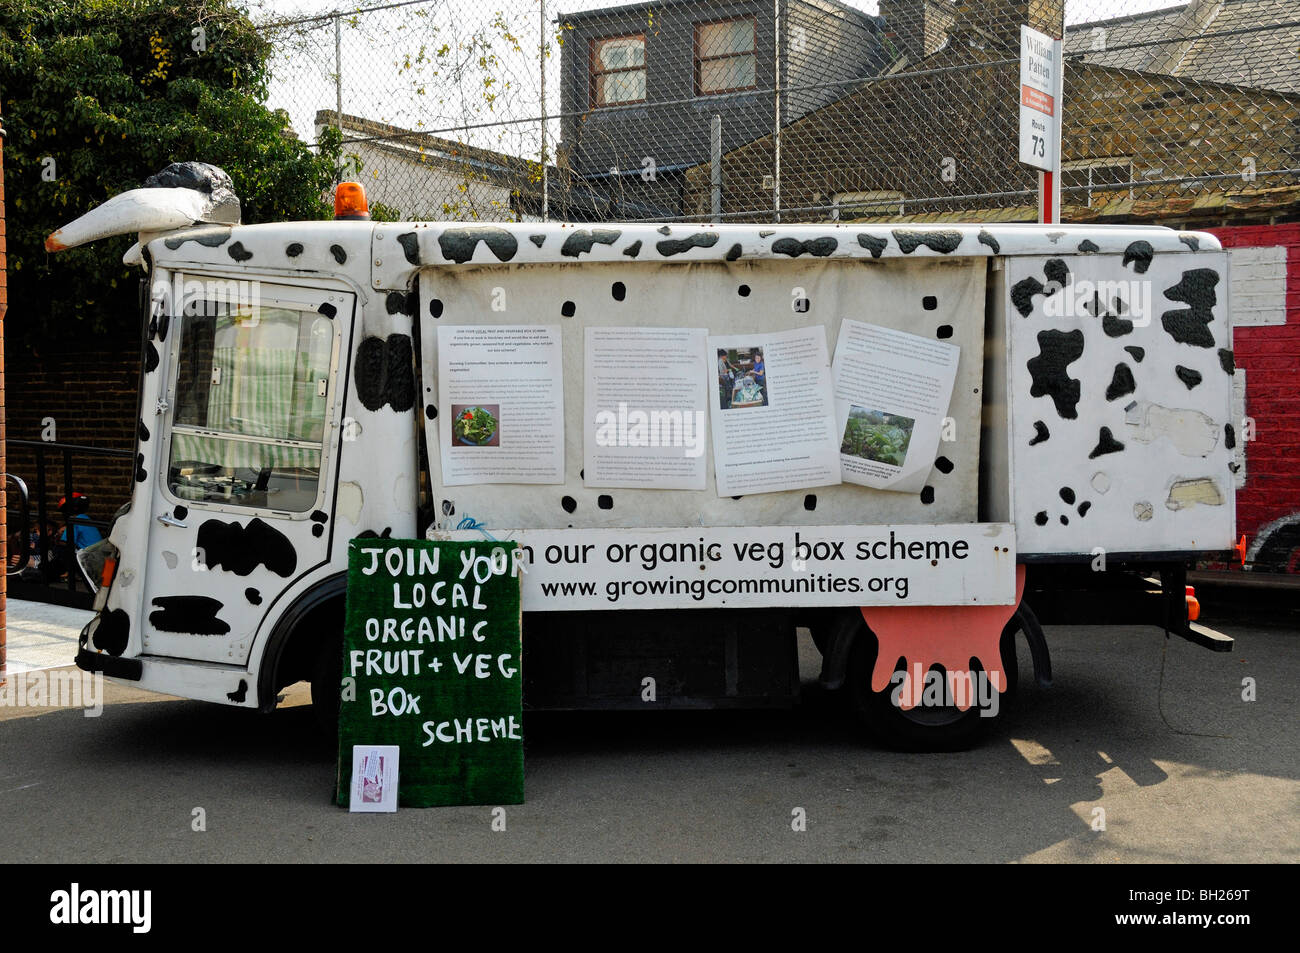 Werbung auf der Seite ein van für einen Bio-Obst und Gemüse Box Schema Stoke Newington Farmers Market London England UK Stockfoto